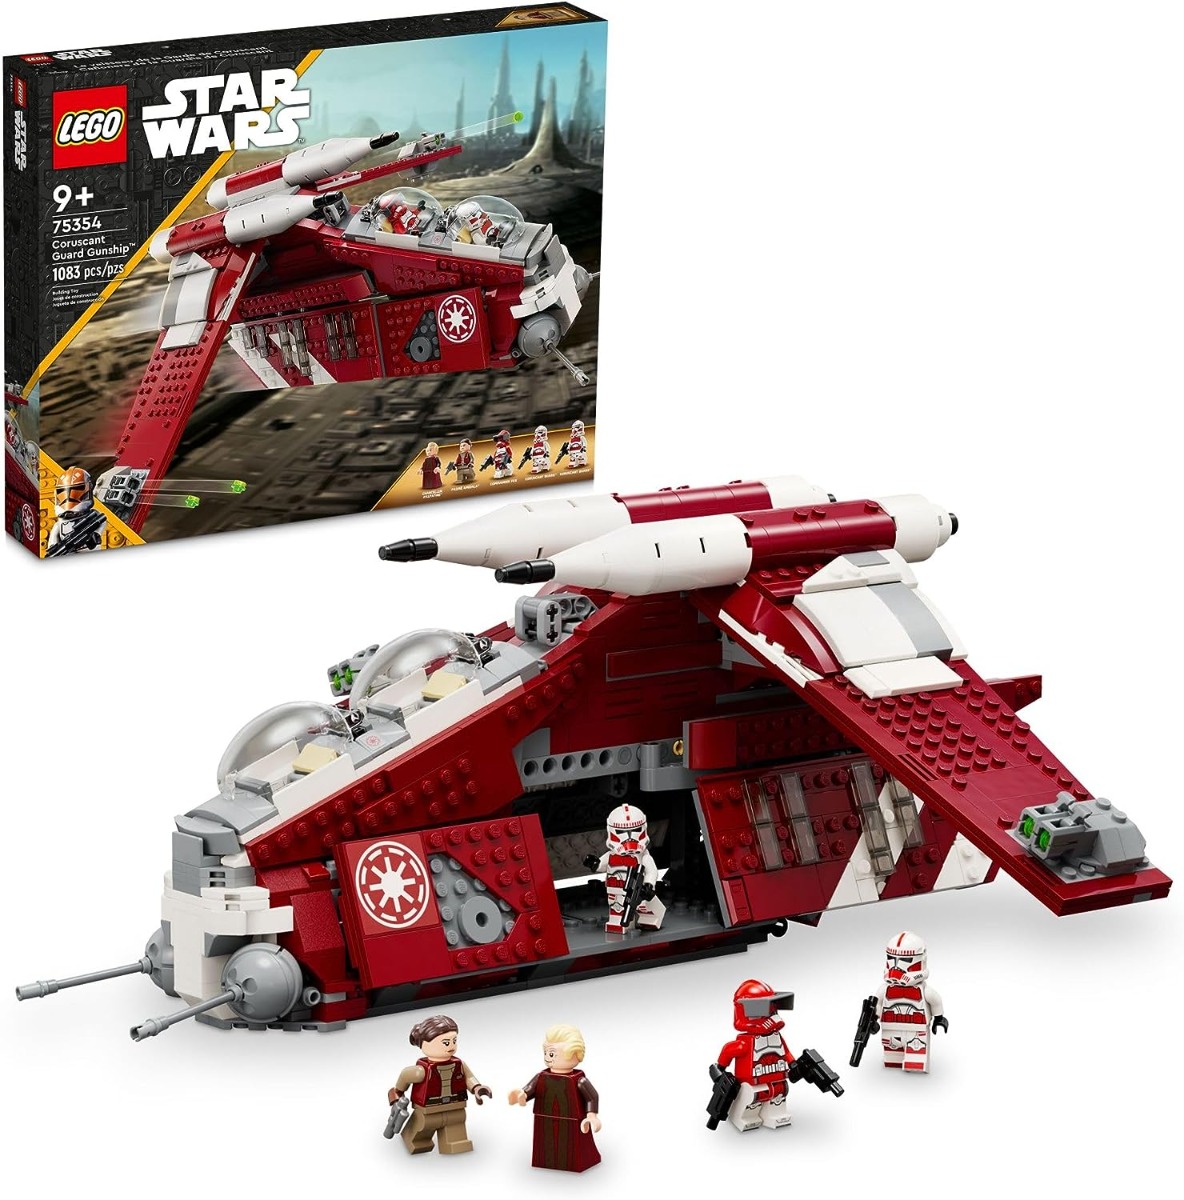 LEGO 75354 Star Wars - The Clone Wars Coruscant Guard Gunship 